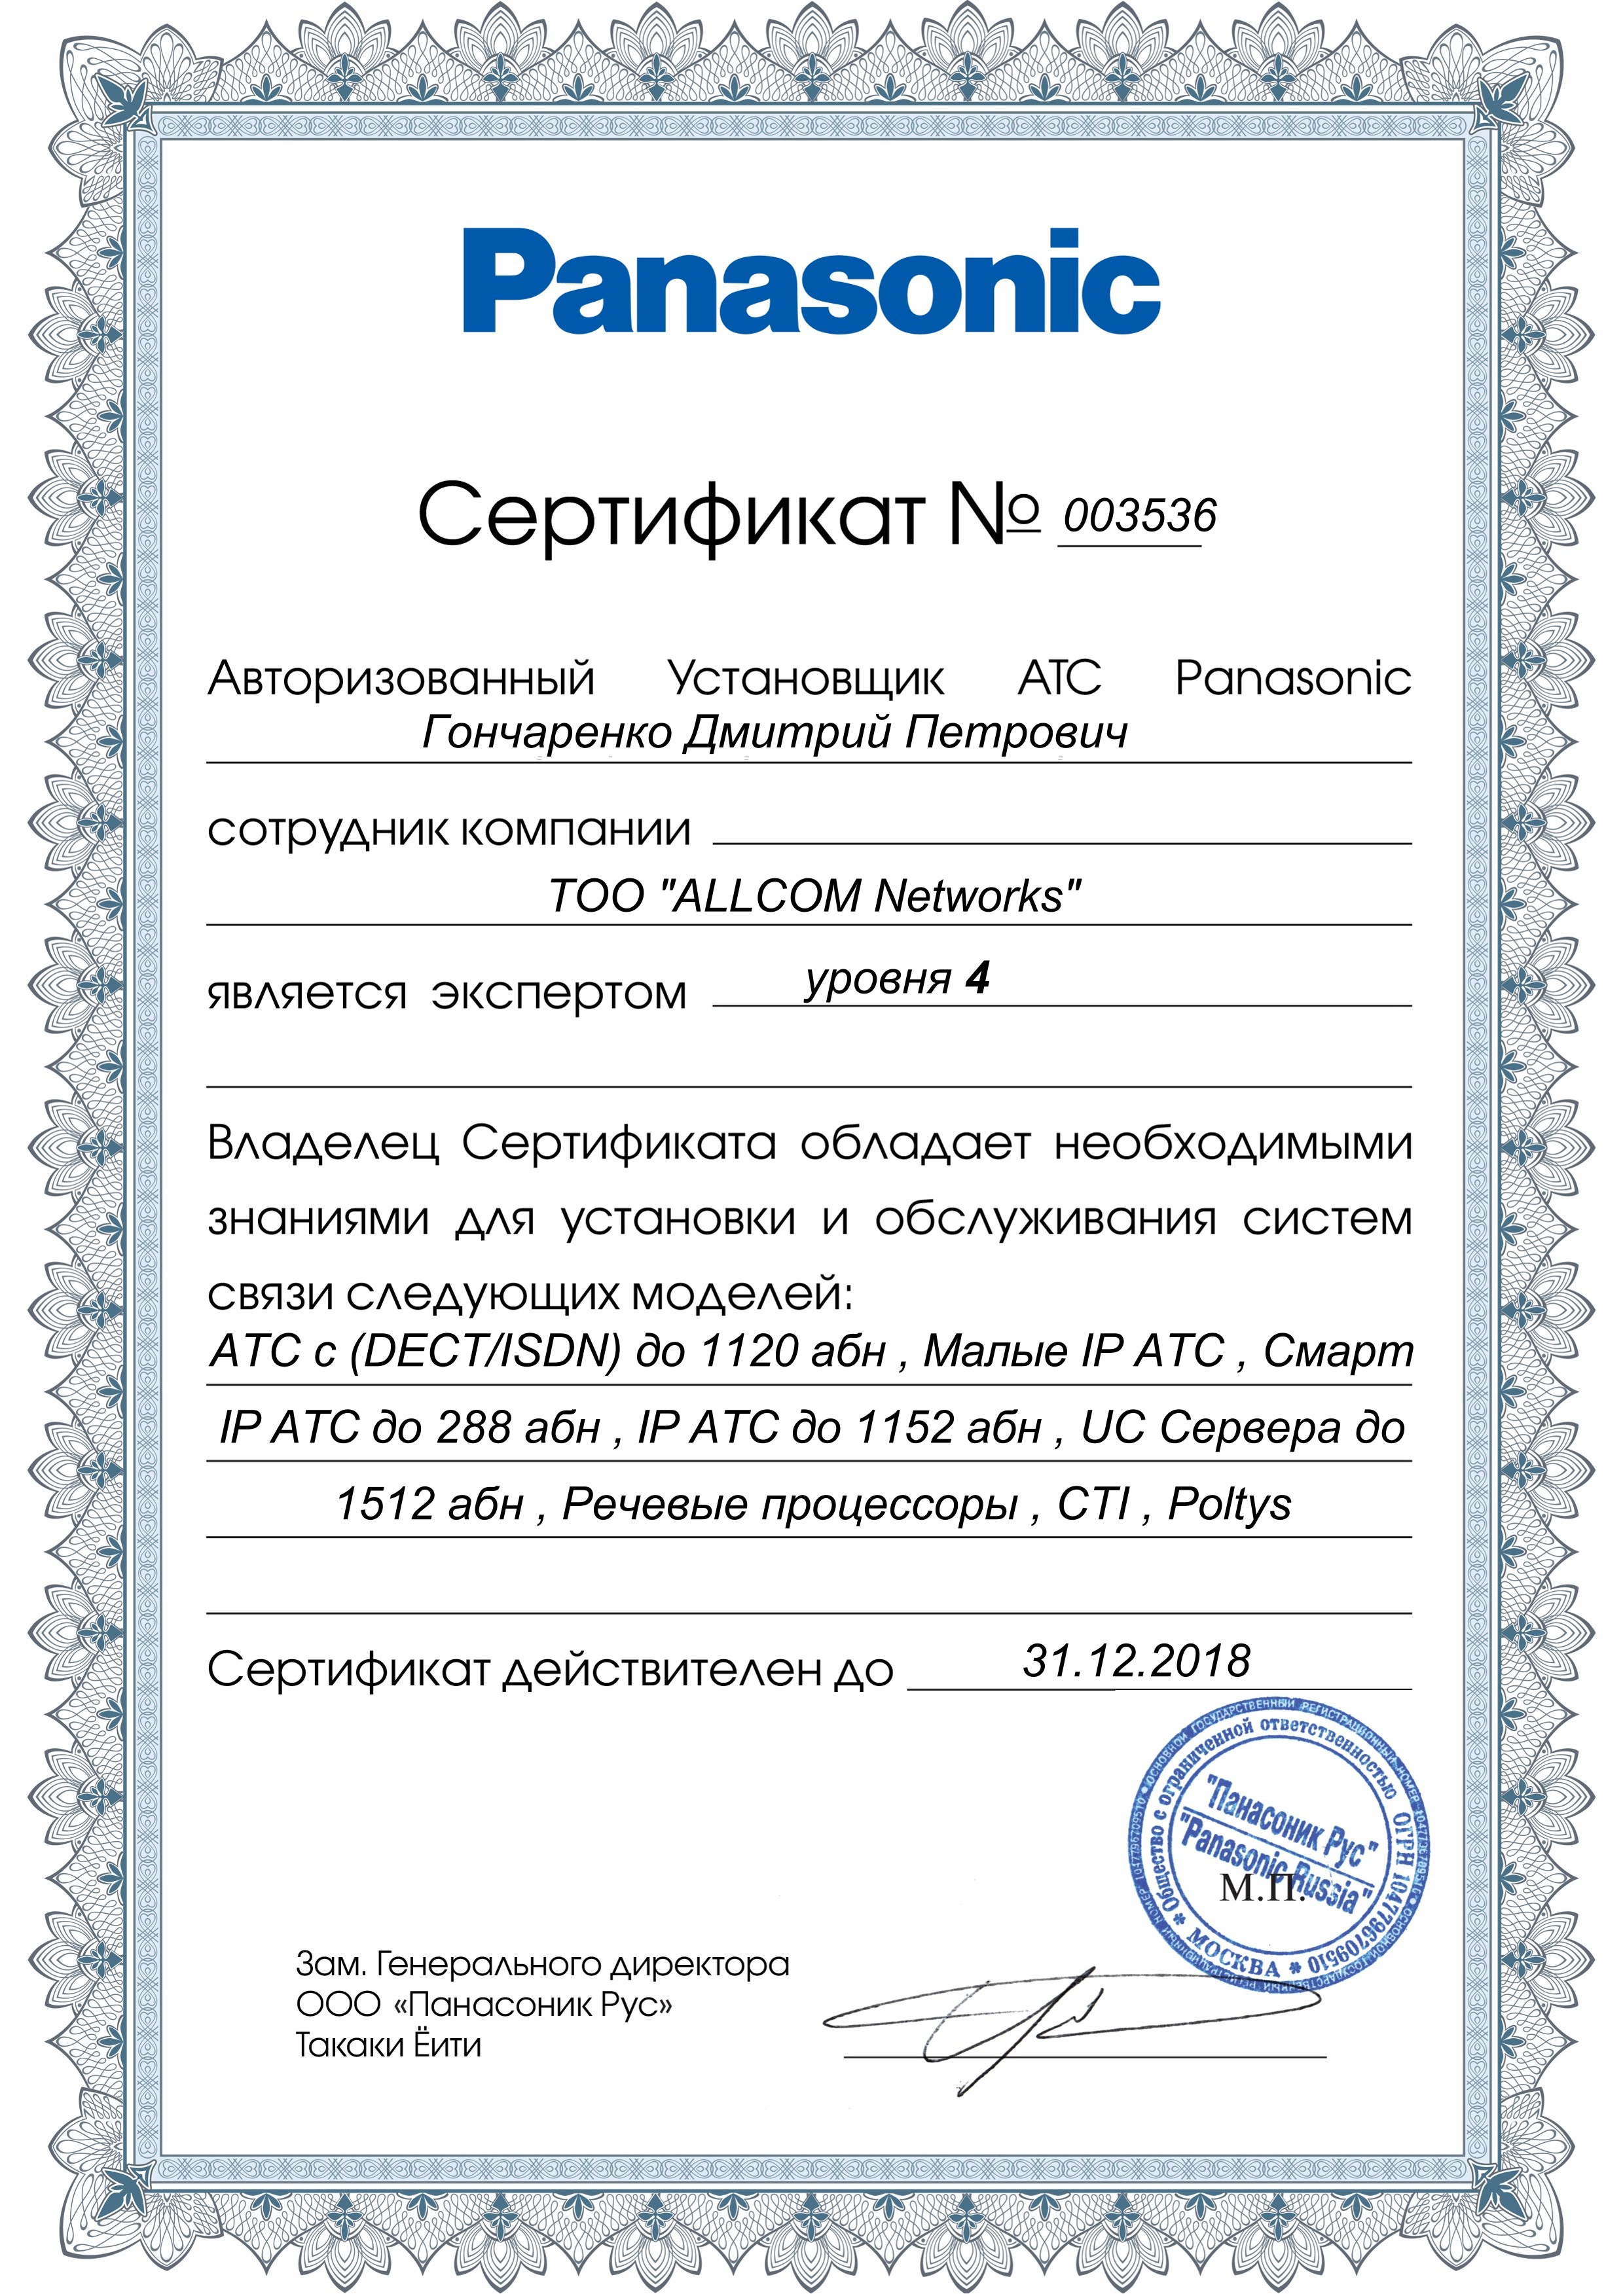 Сертификат эксперта 4-го уровня Гончаренко Д.П.